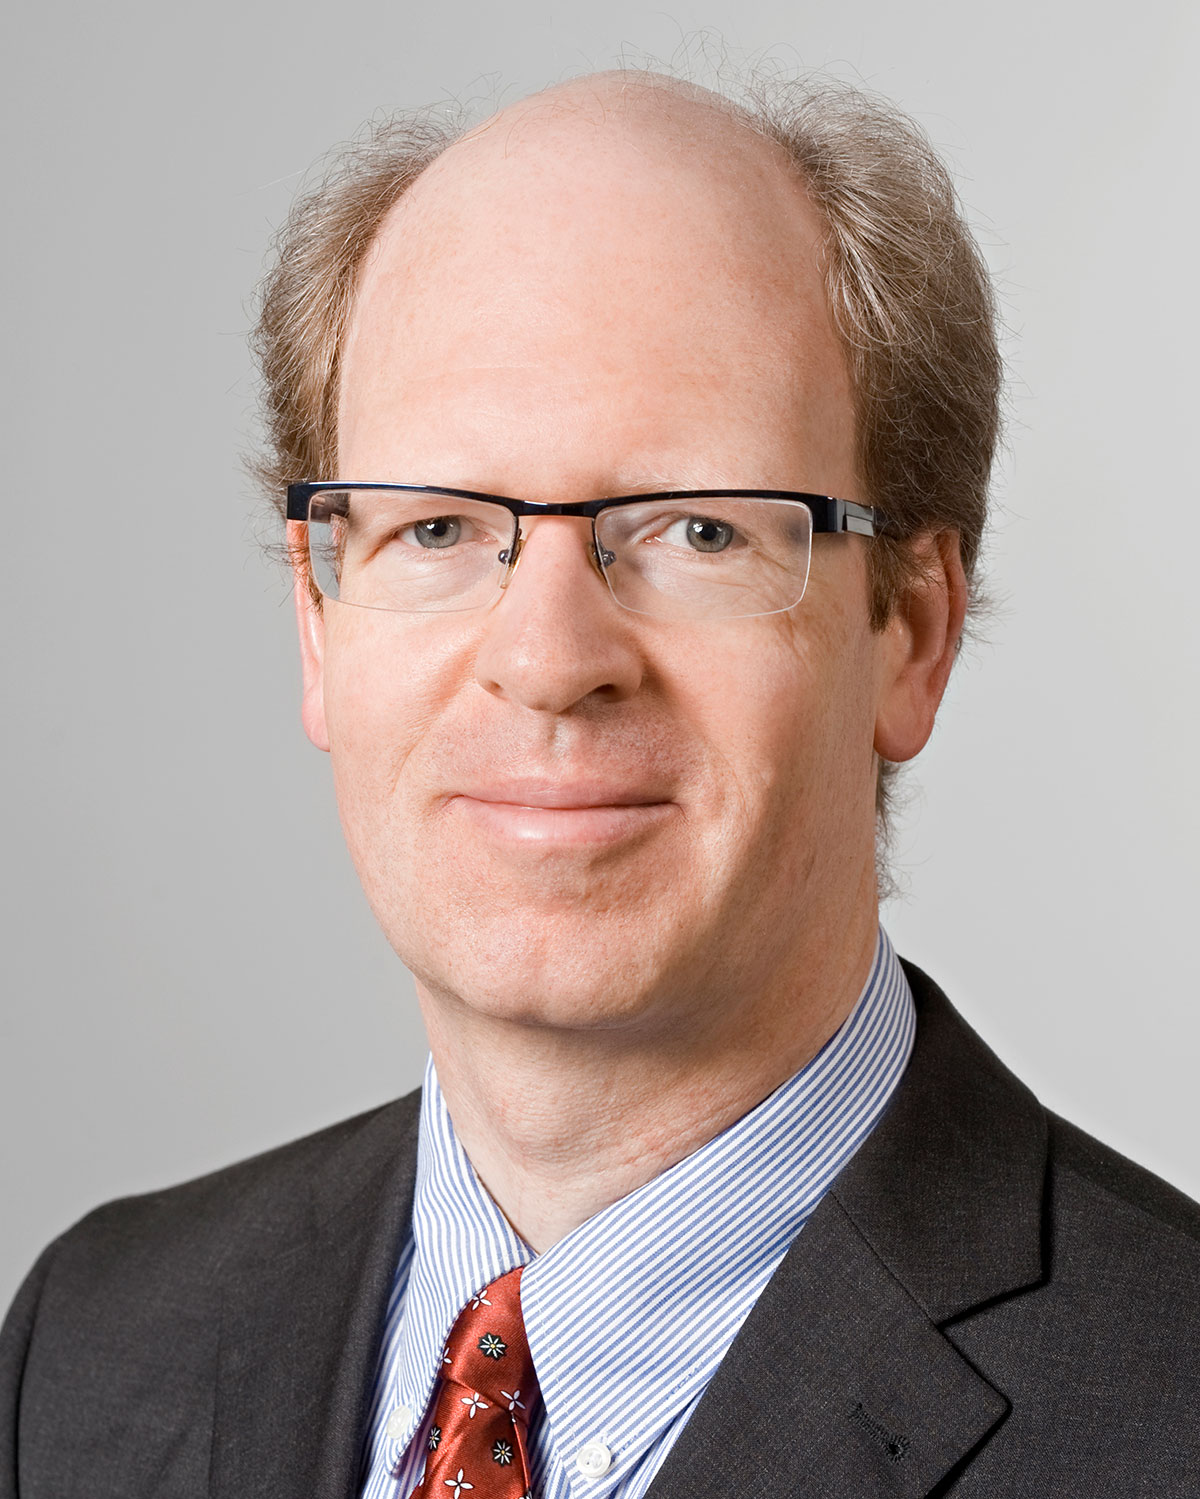 Portrait von Prof. Dr. Ulf Schlichtmann, Mitglied des Senats, Vertreter der Hochschullehrer/innen, Ordinarius für Entwurfsautomatisierung